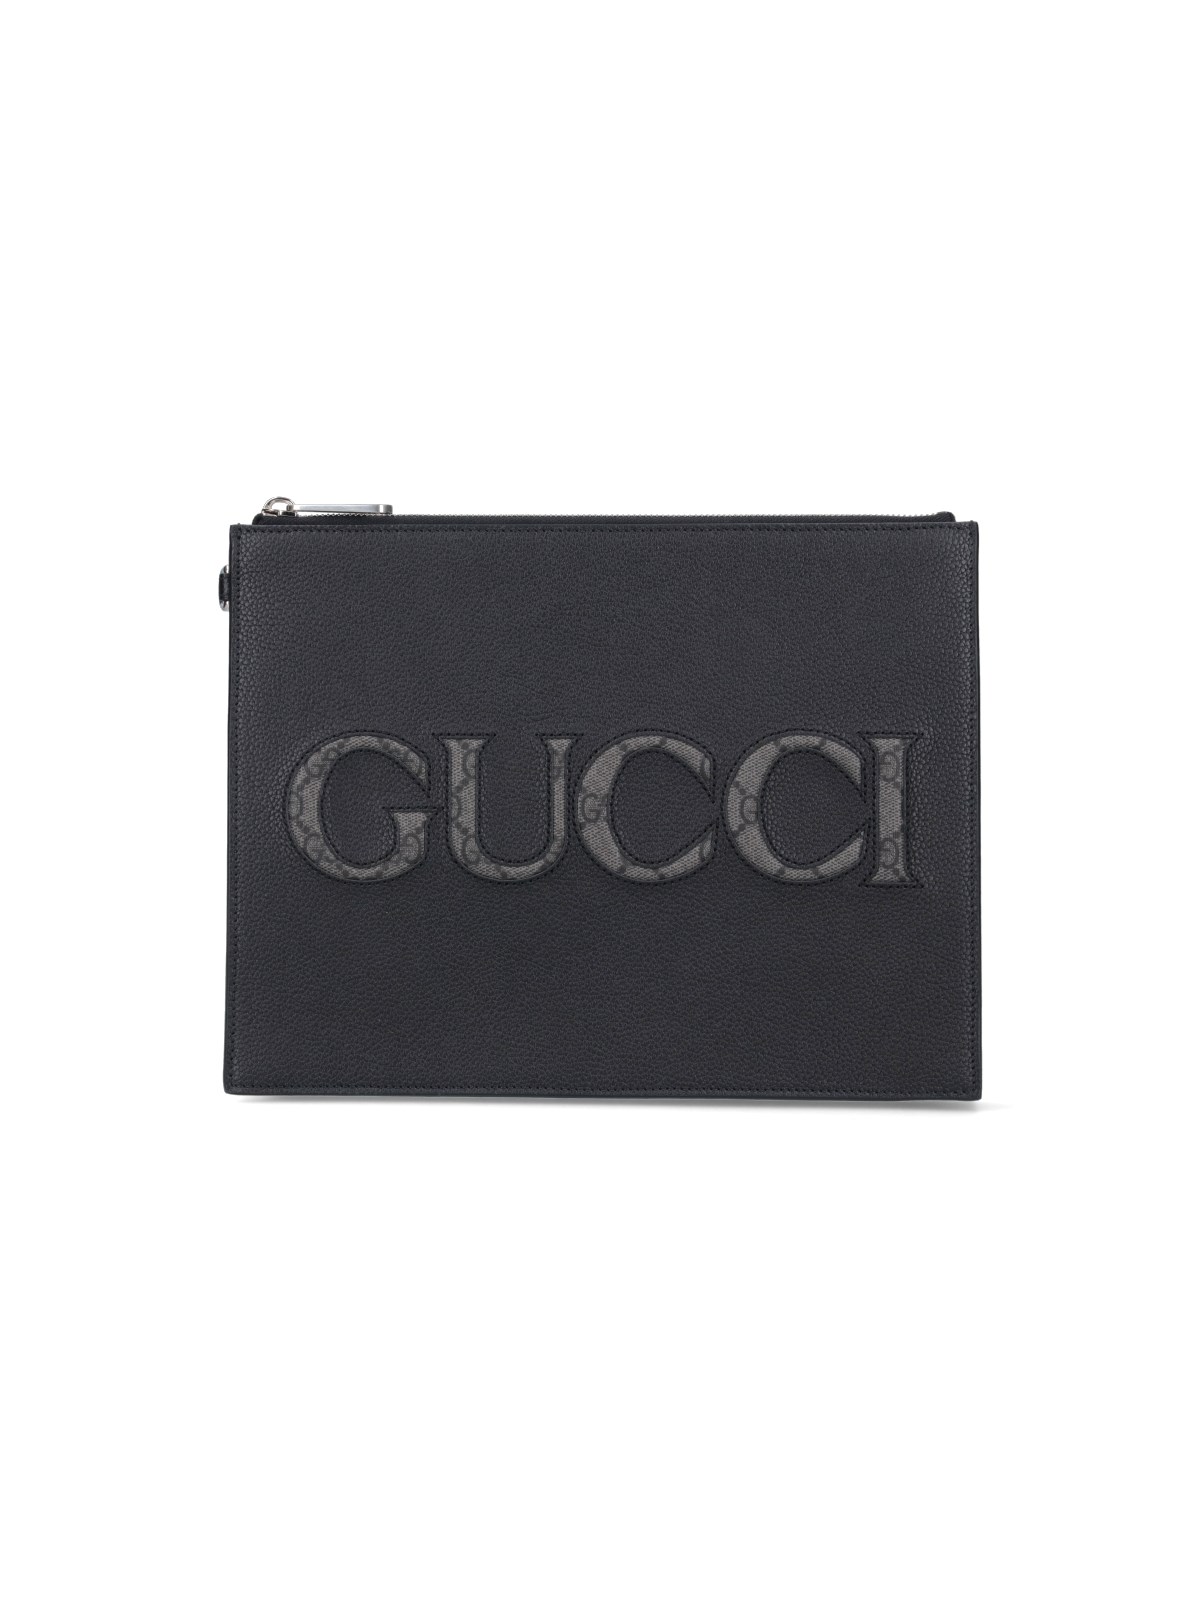 Gucci Logo Pouch In Black  